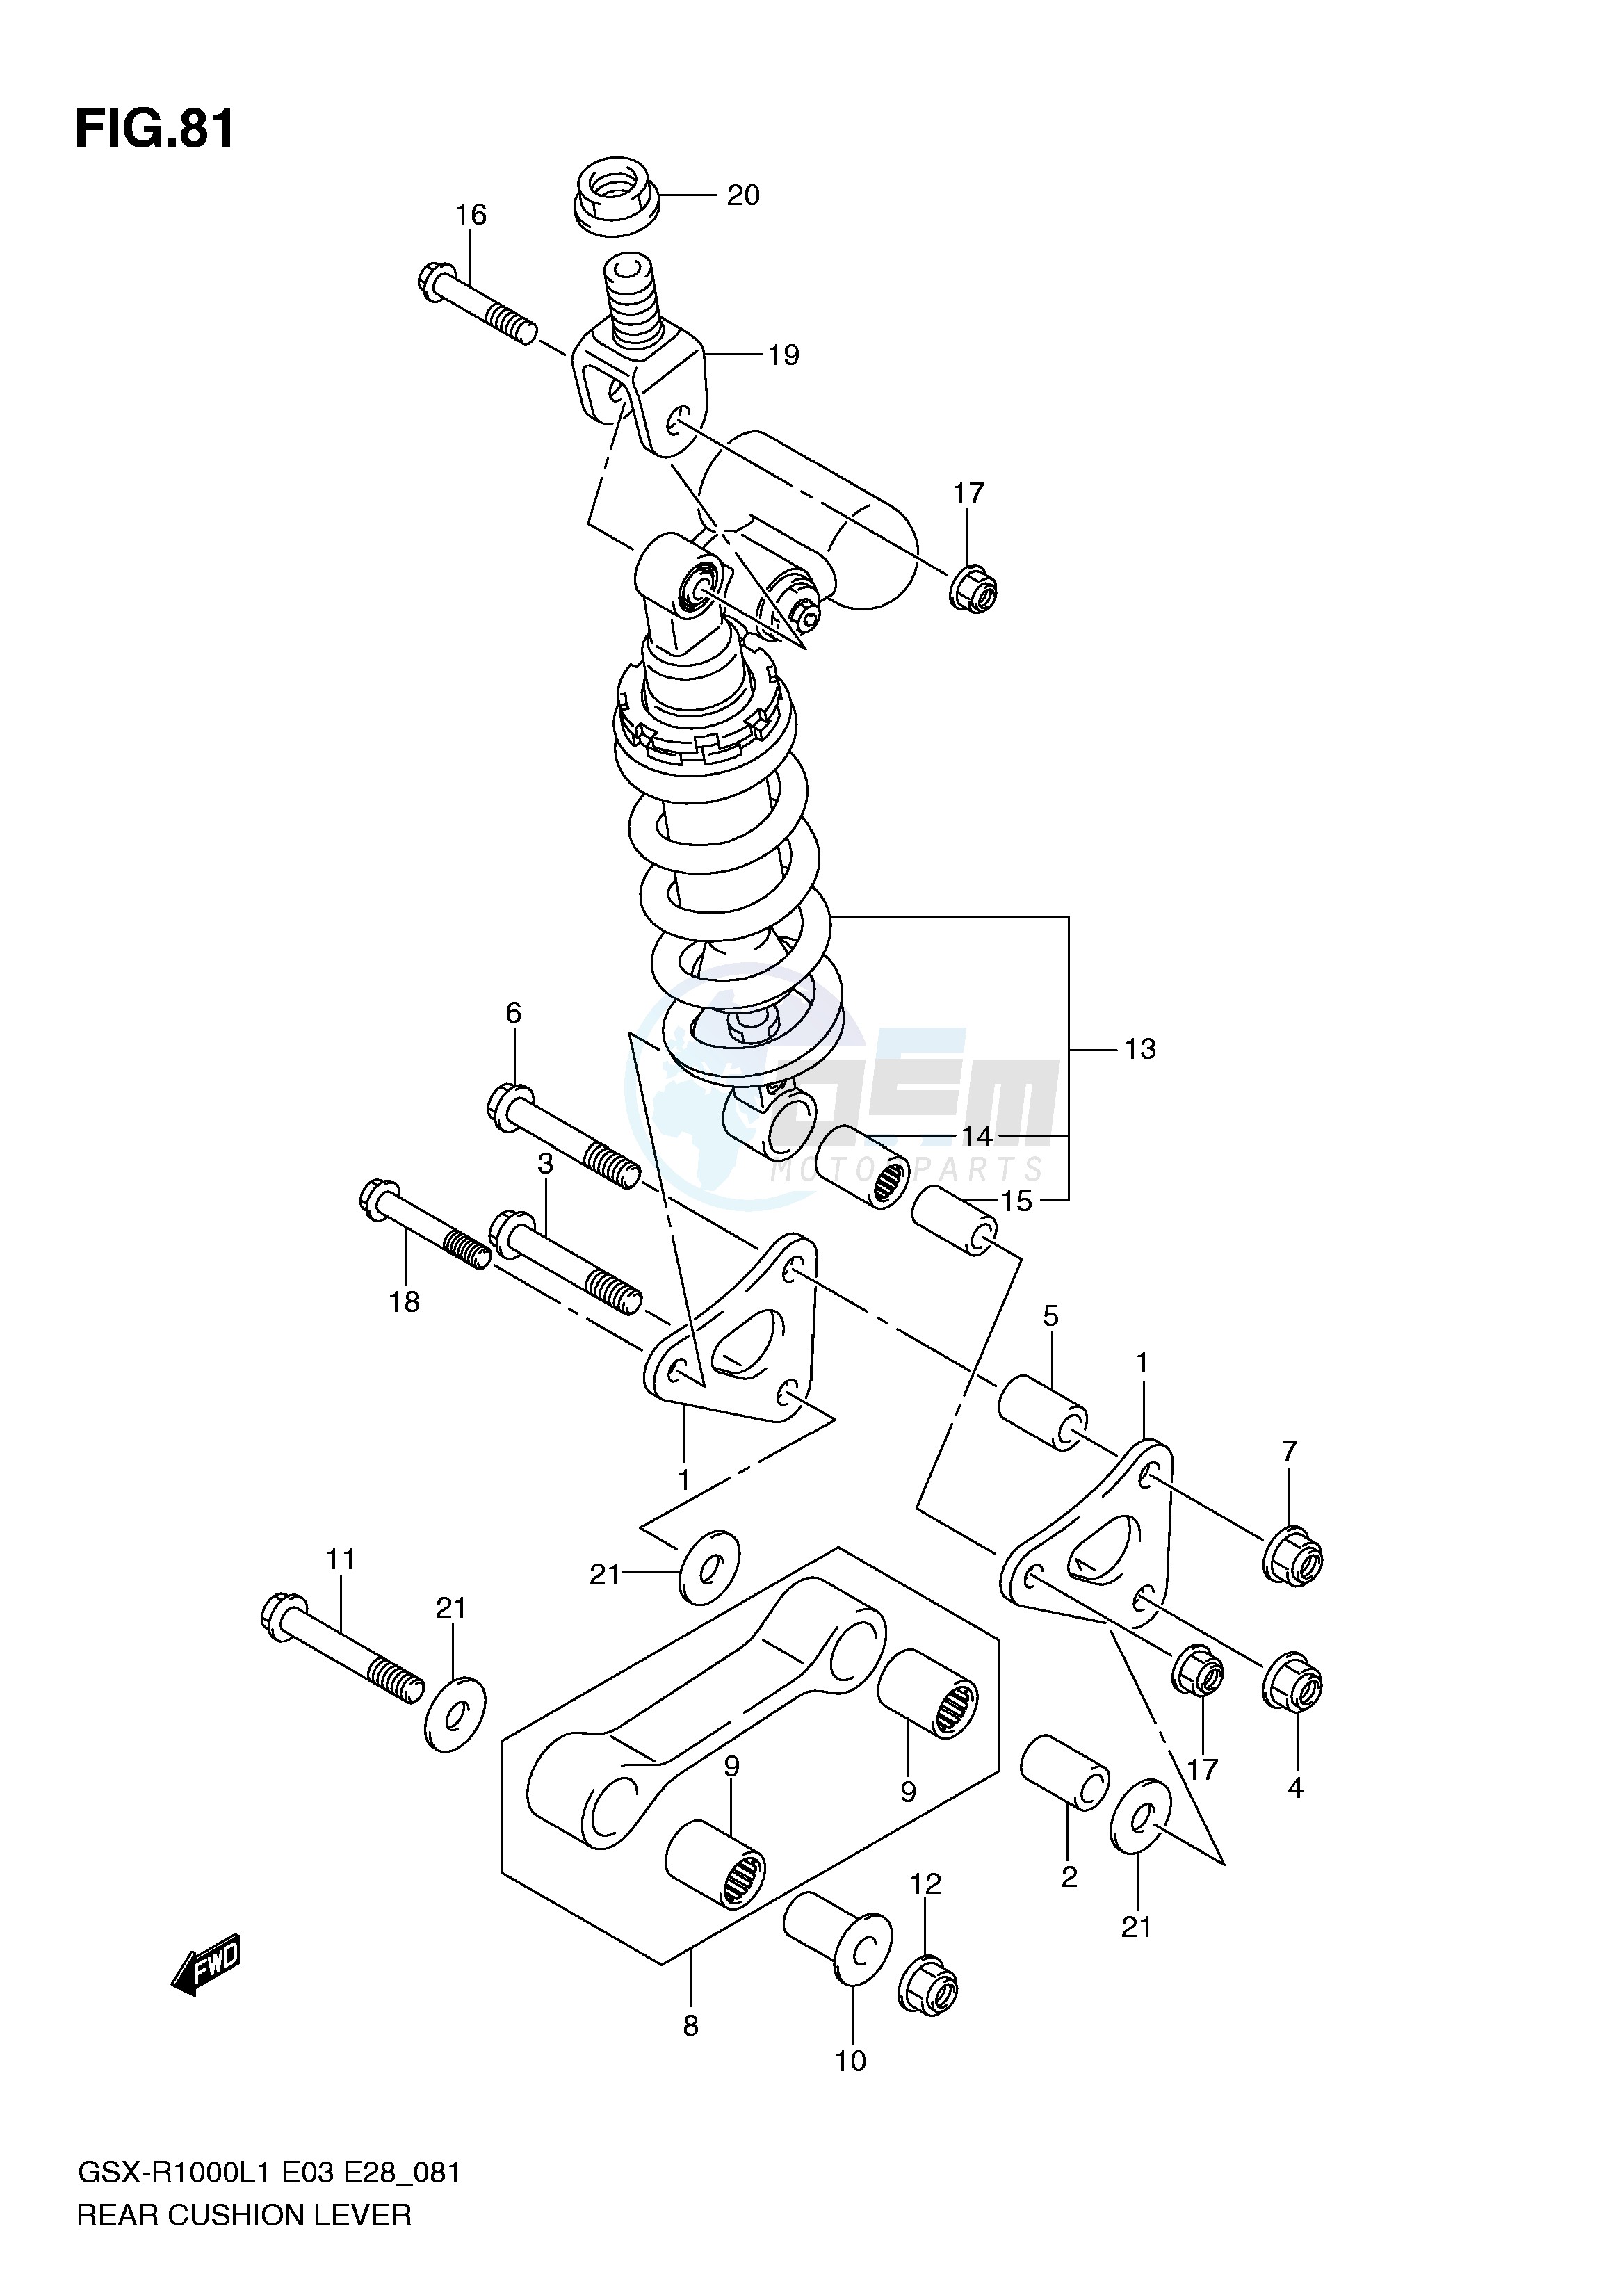 REAR CUSHION LEVER (GSX-R1000L1 E3) blueprint